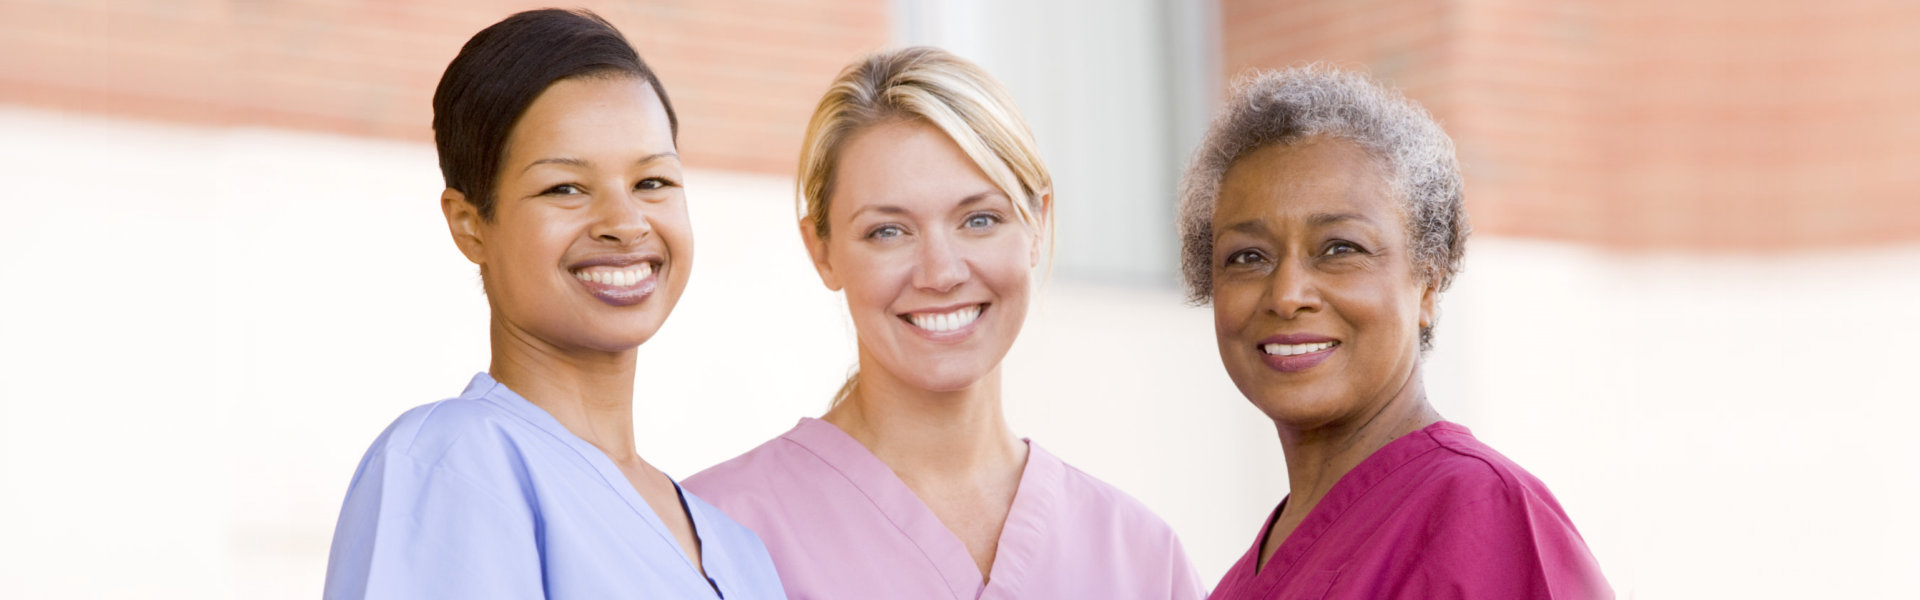 three smiling female caregivers